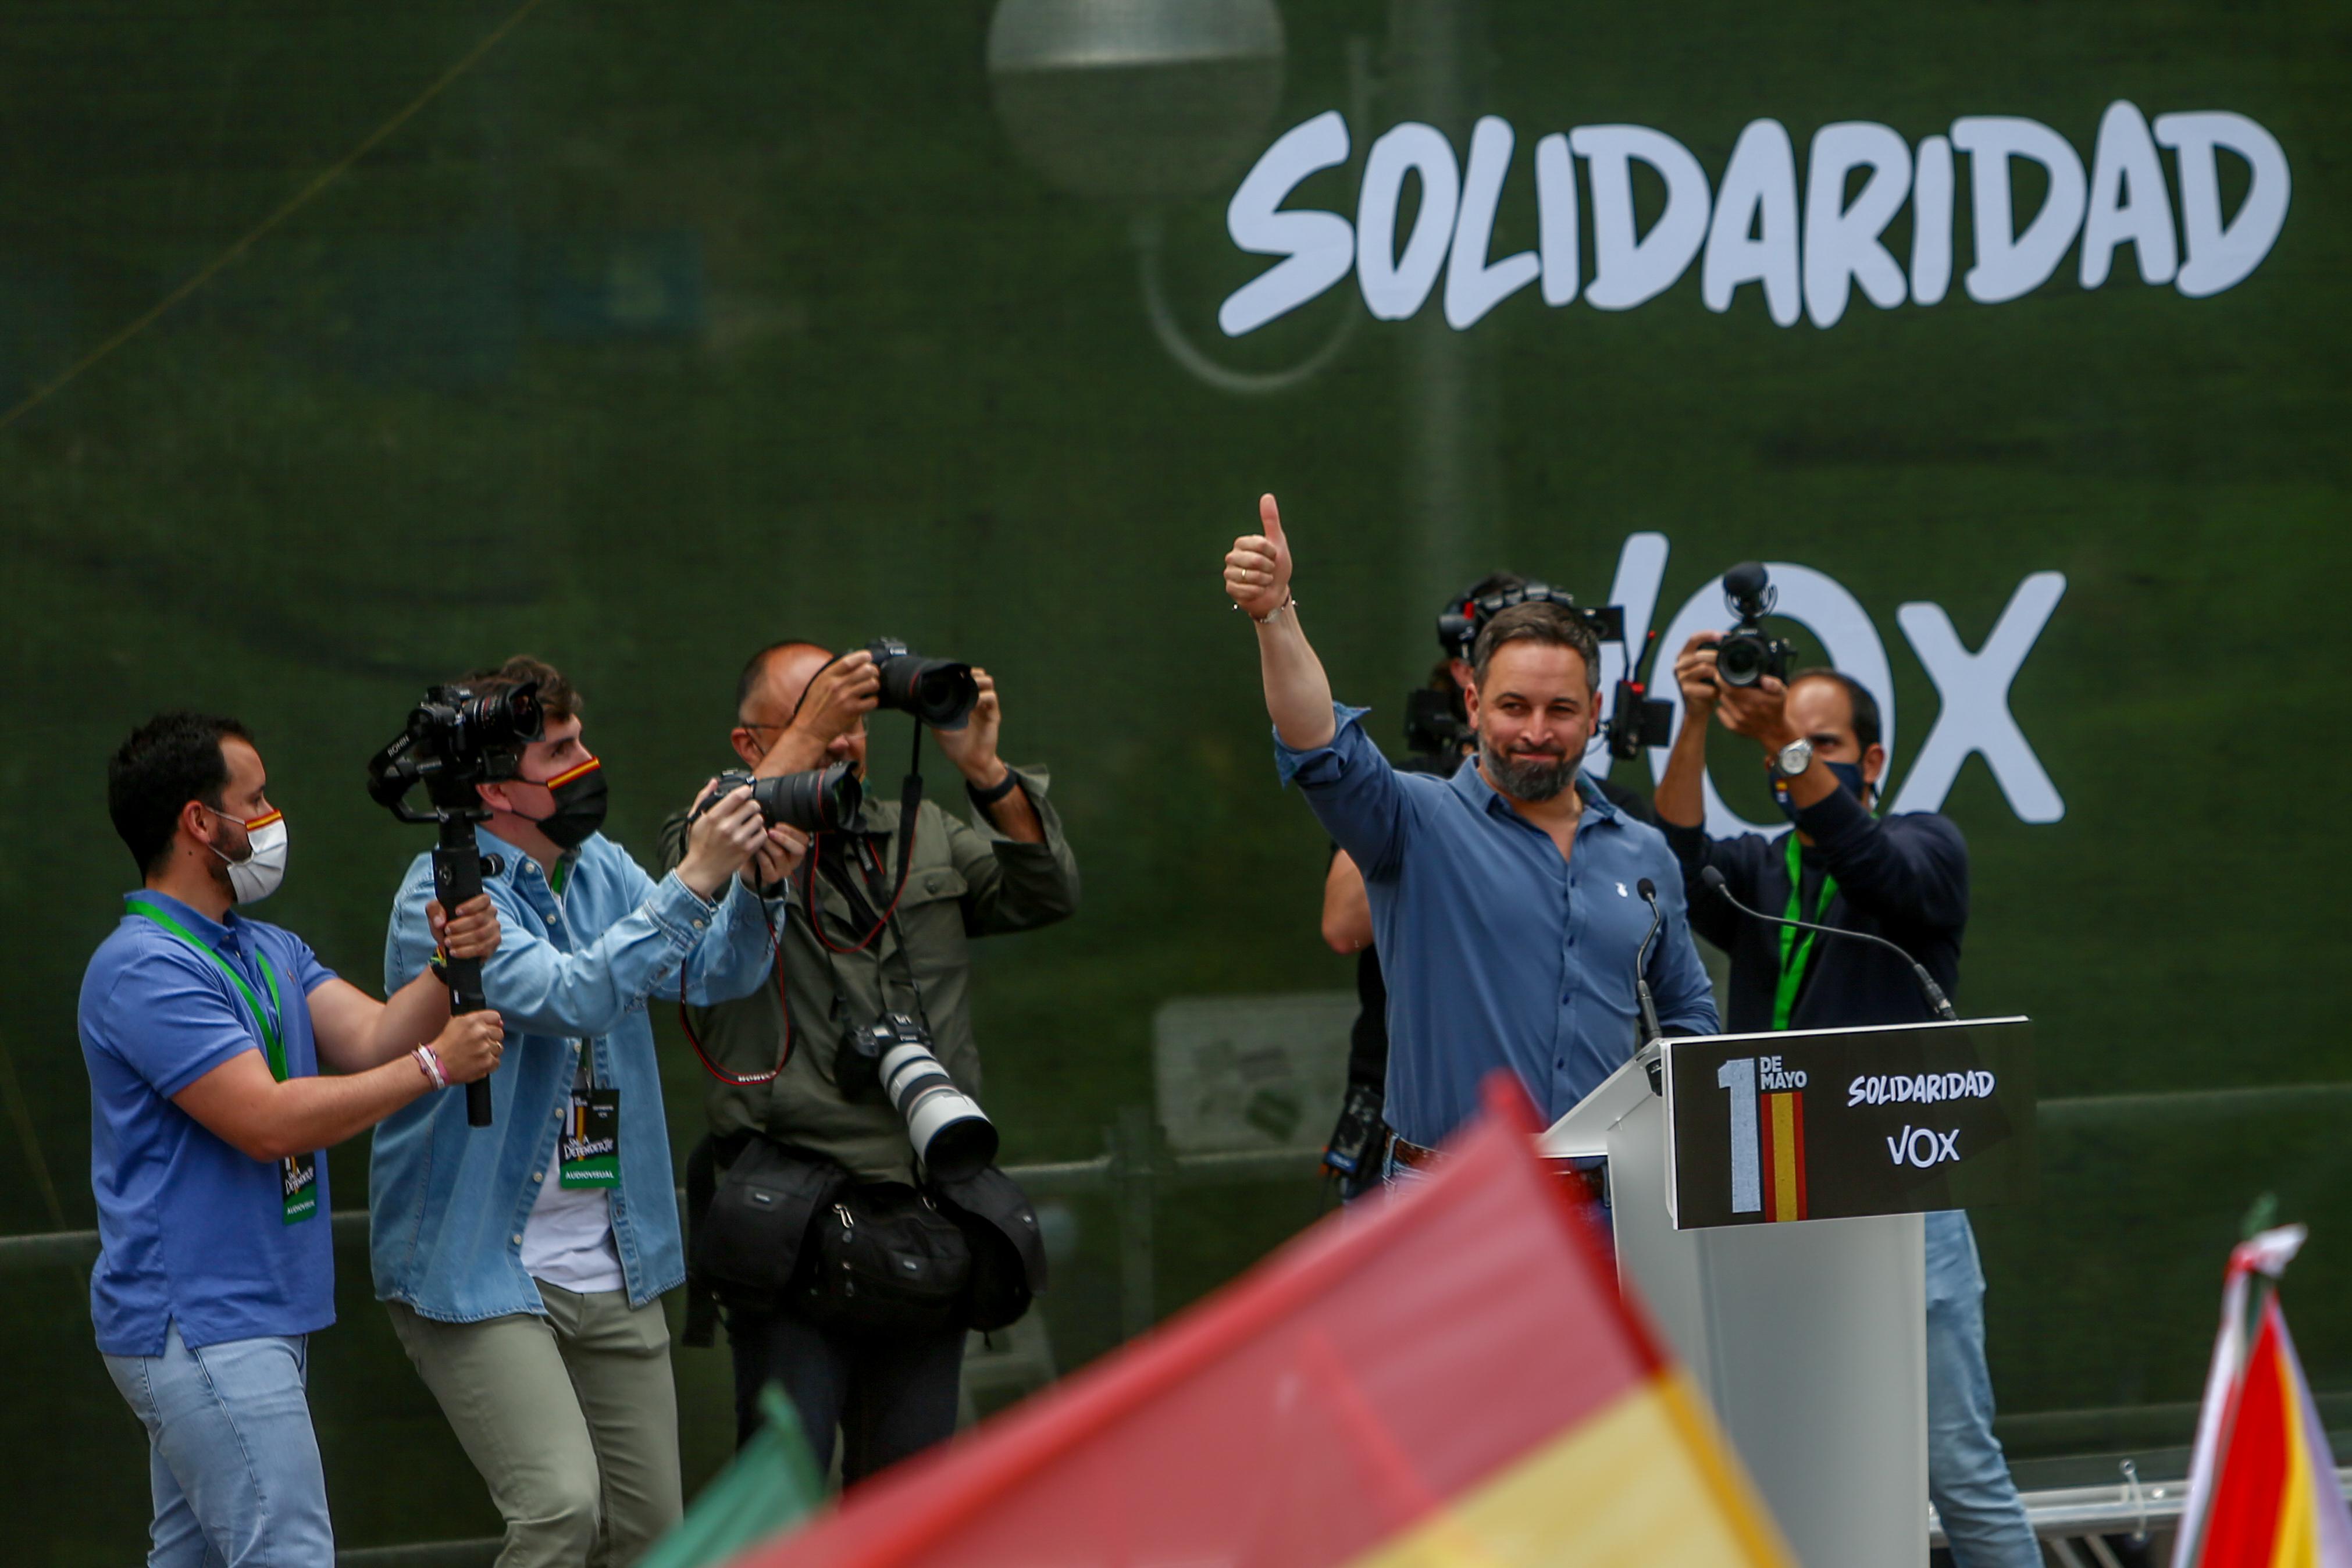 El presidente de Vox, Santiago Abascal, durante un acto del sindicato Solidaridad, en Conde de Casal, a 1 de mayo de 2021, en Madrid, (España). EP